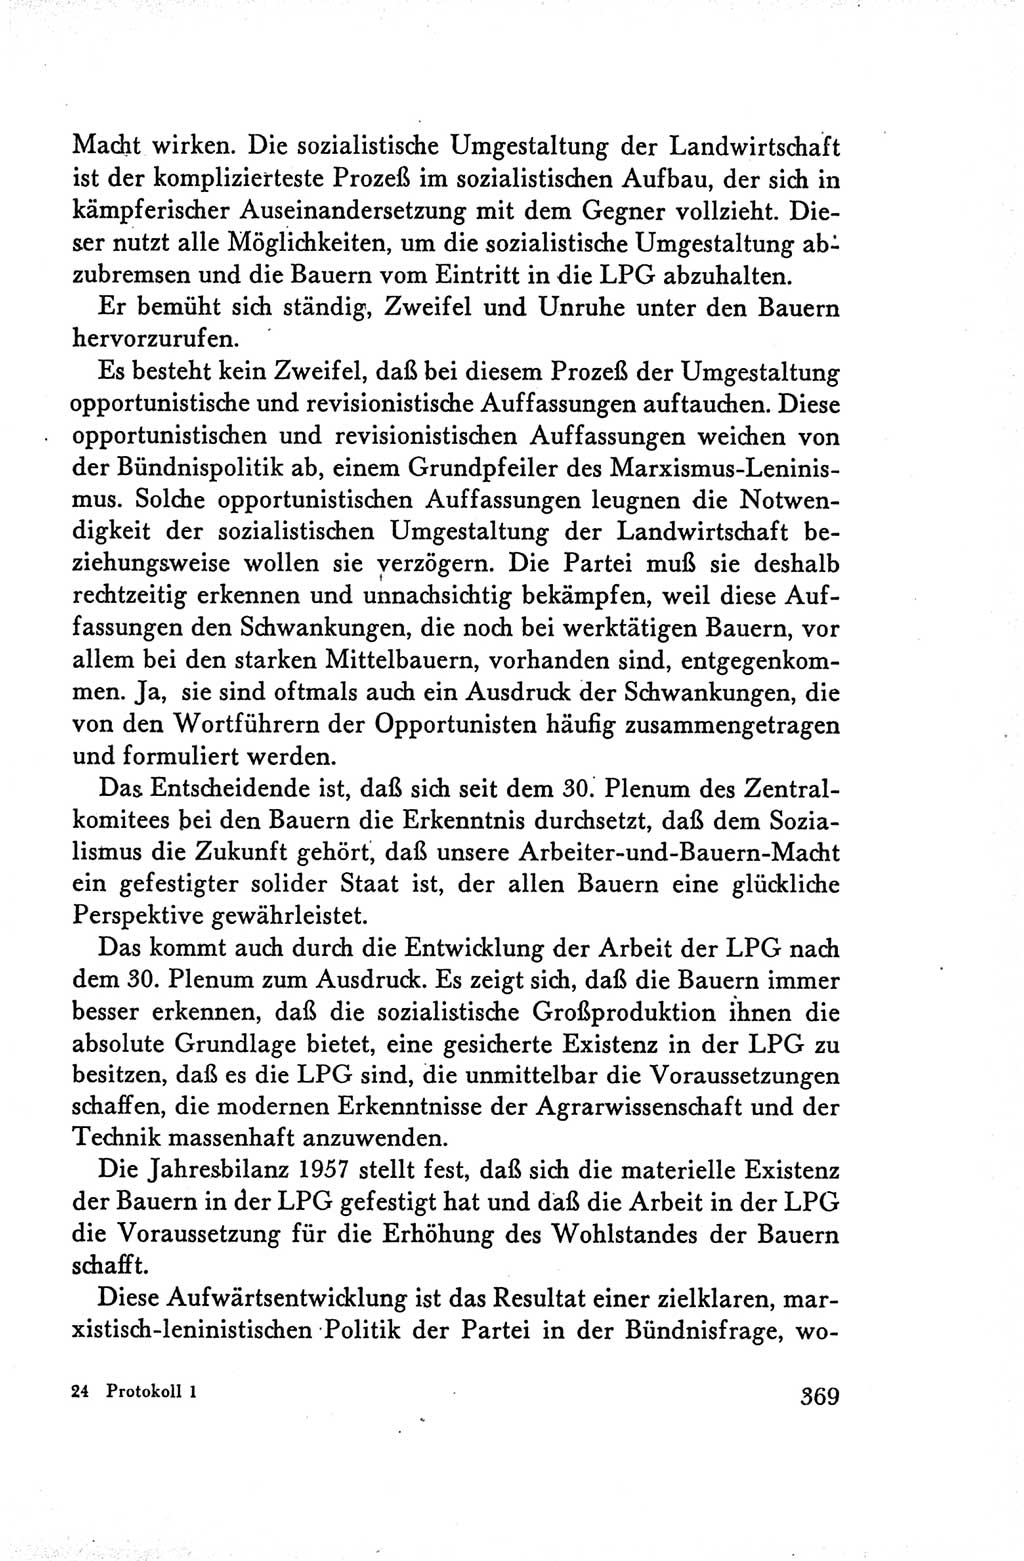 Protokoll der Verhandlungen des Ⅴ. Parteitages der Sozialistischen Einheitspartei Deutschlands (SED) [Deutsche Demokratische Republik (DDR)] 1958, Seite 369